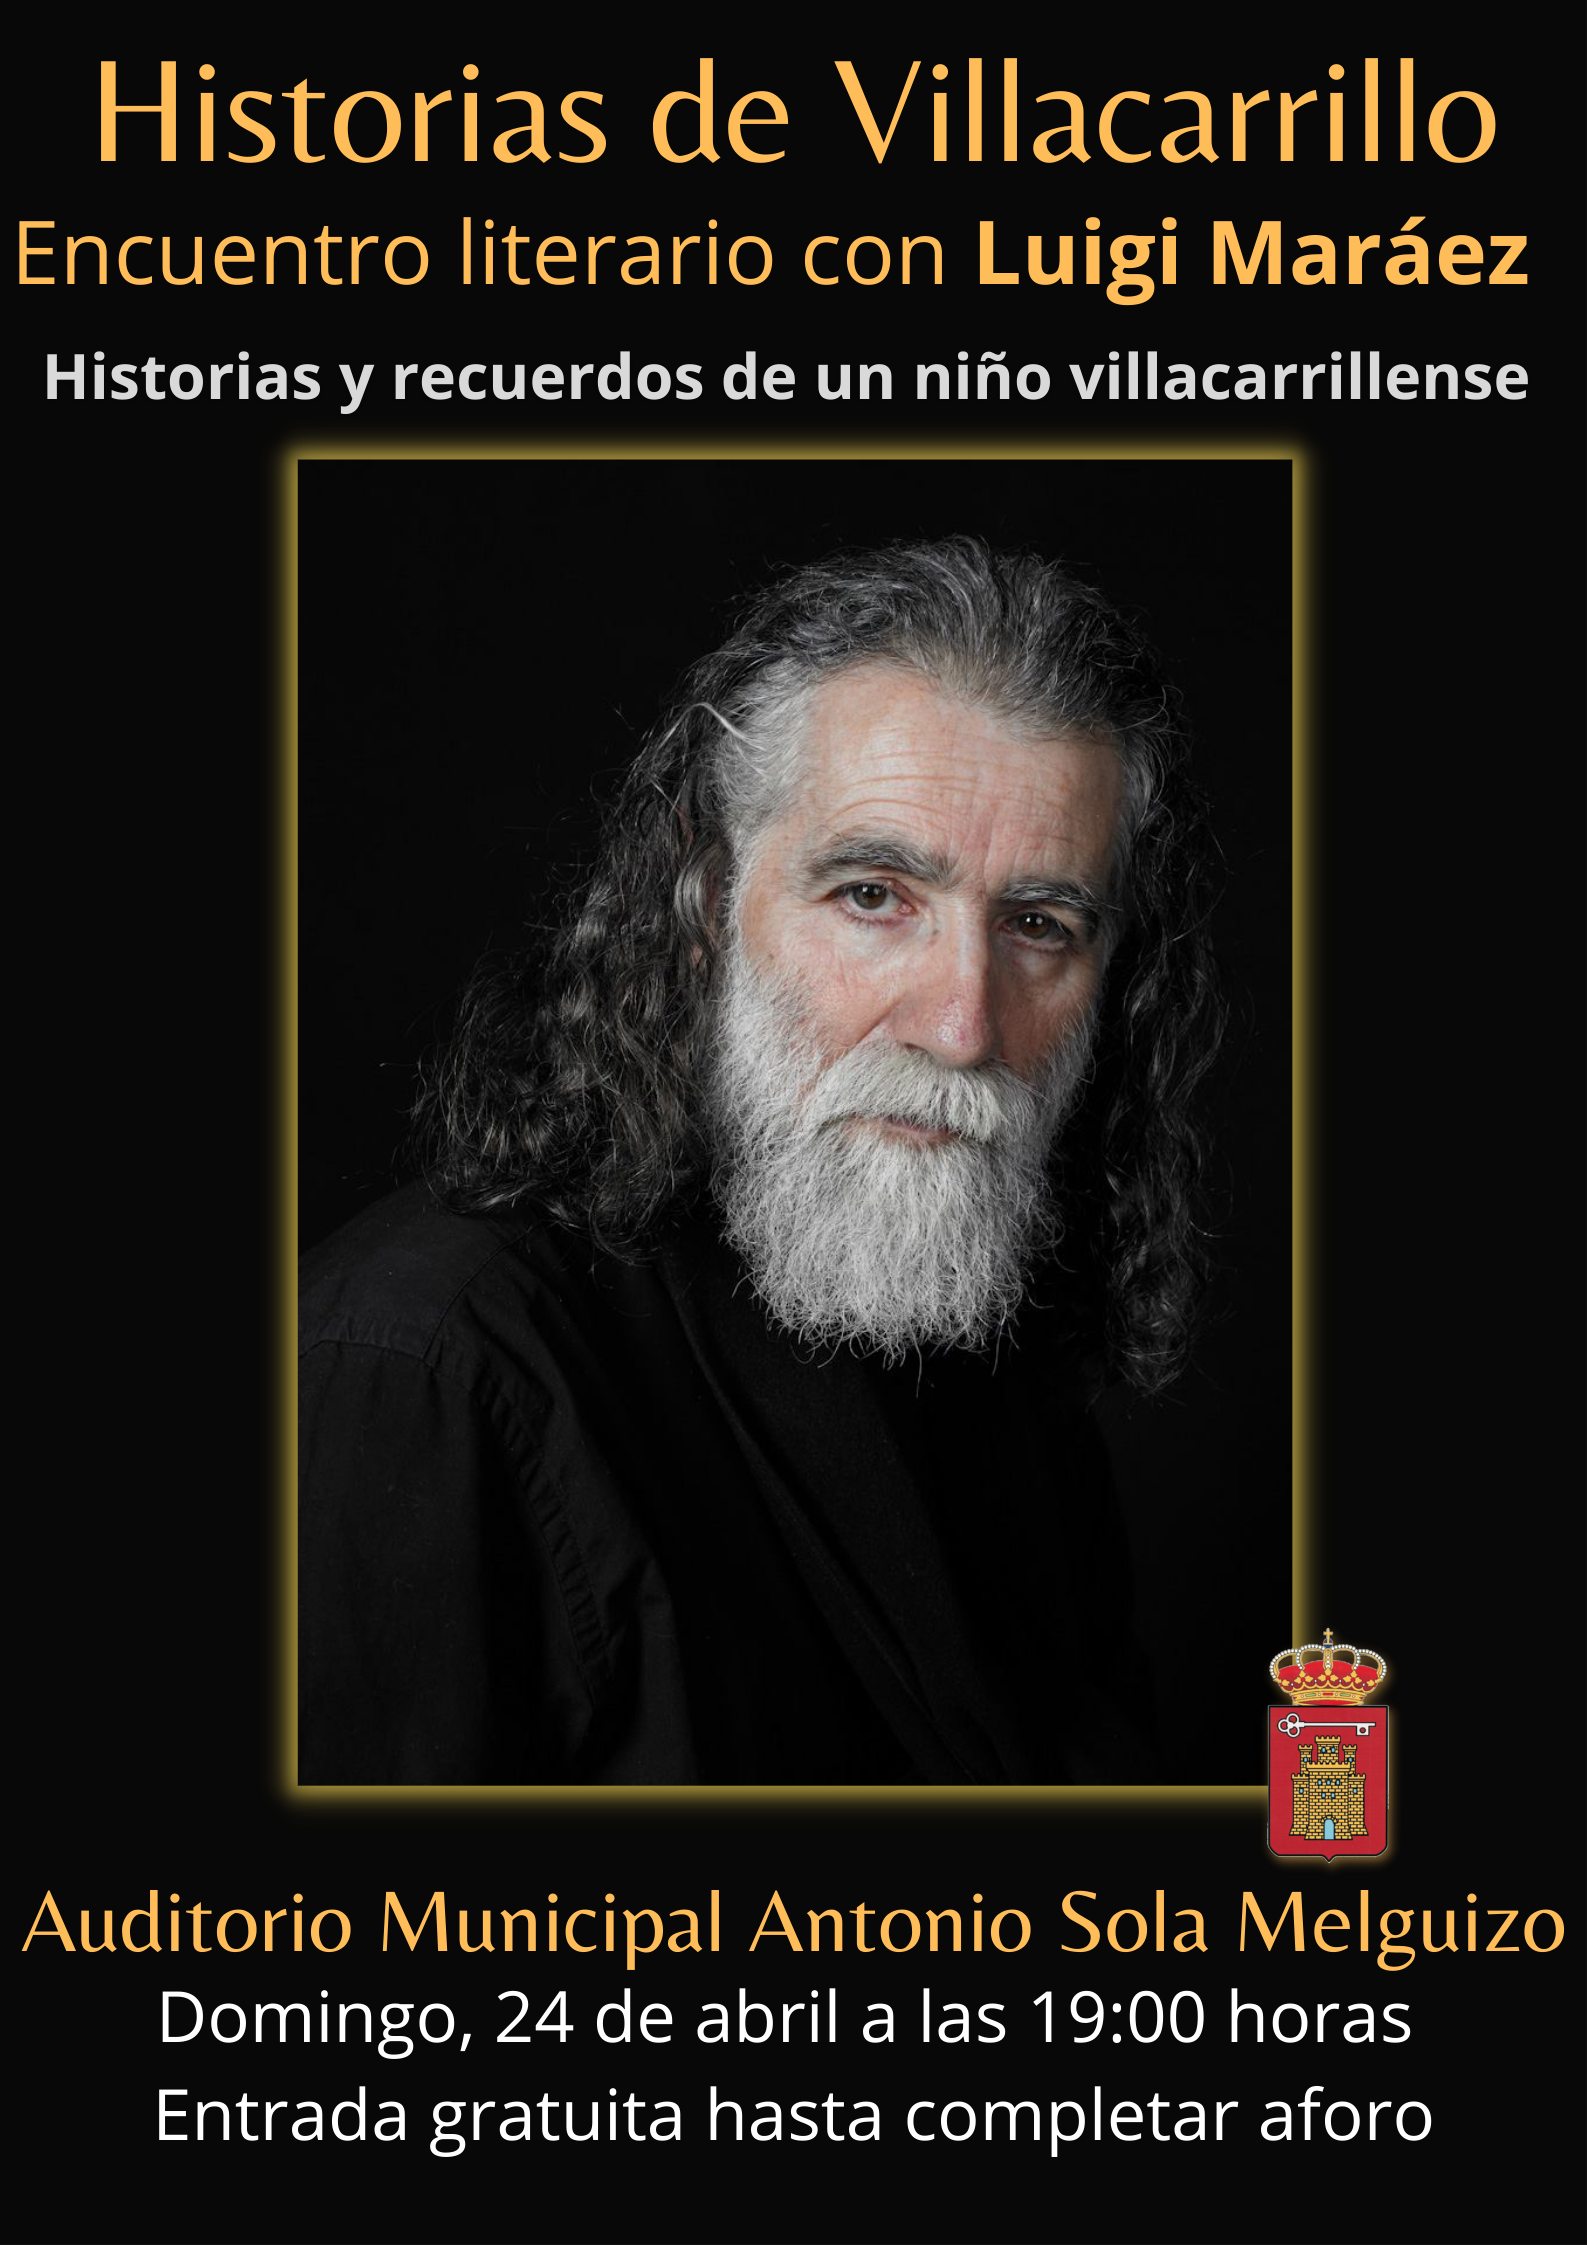 Luigi Maráez nos contará en vivo sus Historias de Villacarrillo